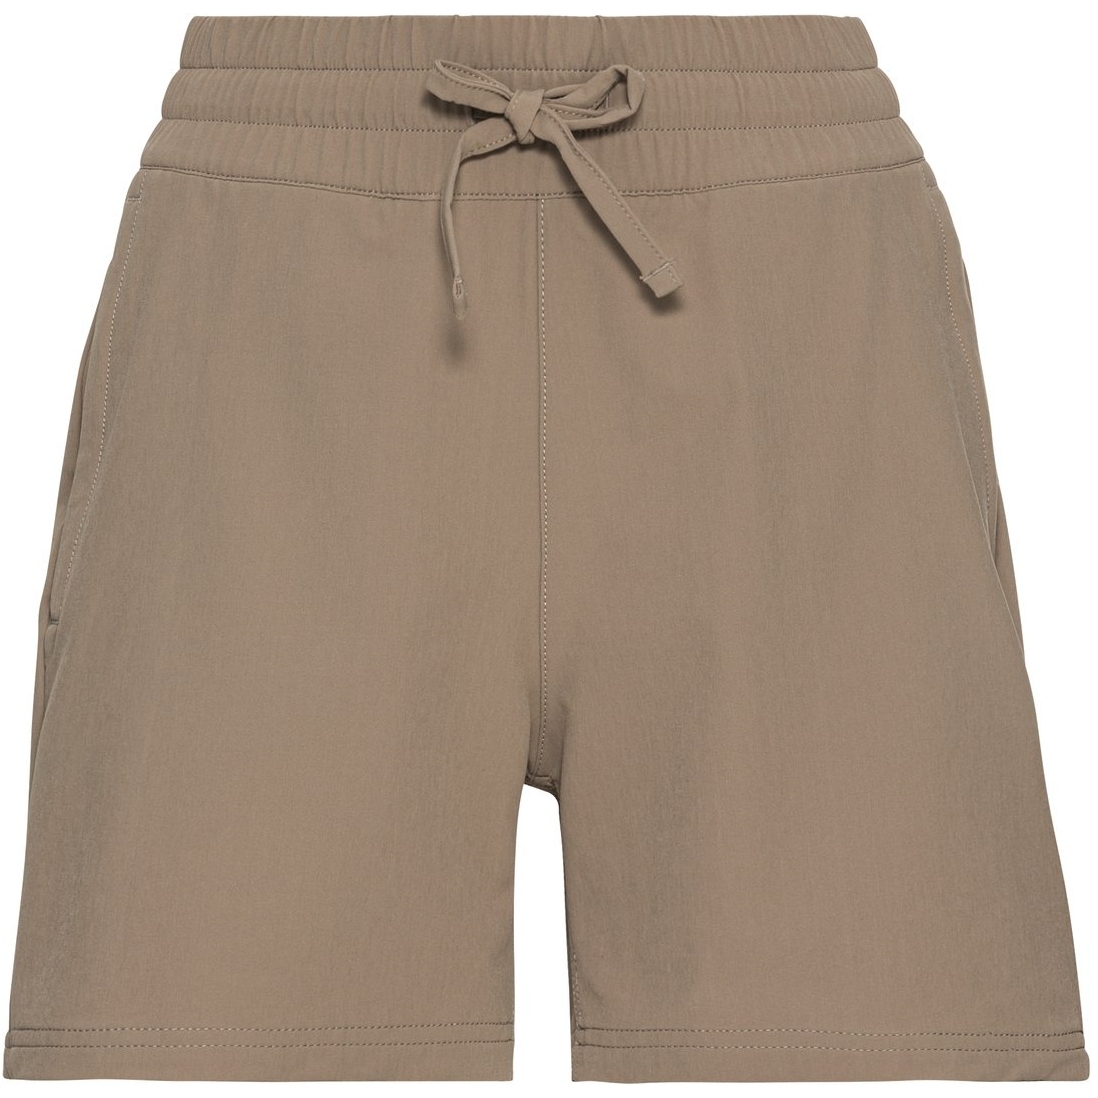 Produktbild von Odlo Damen HALDEN Shorts - lead gray